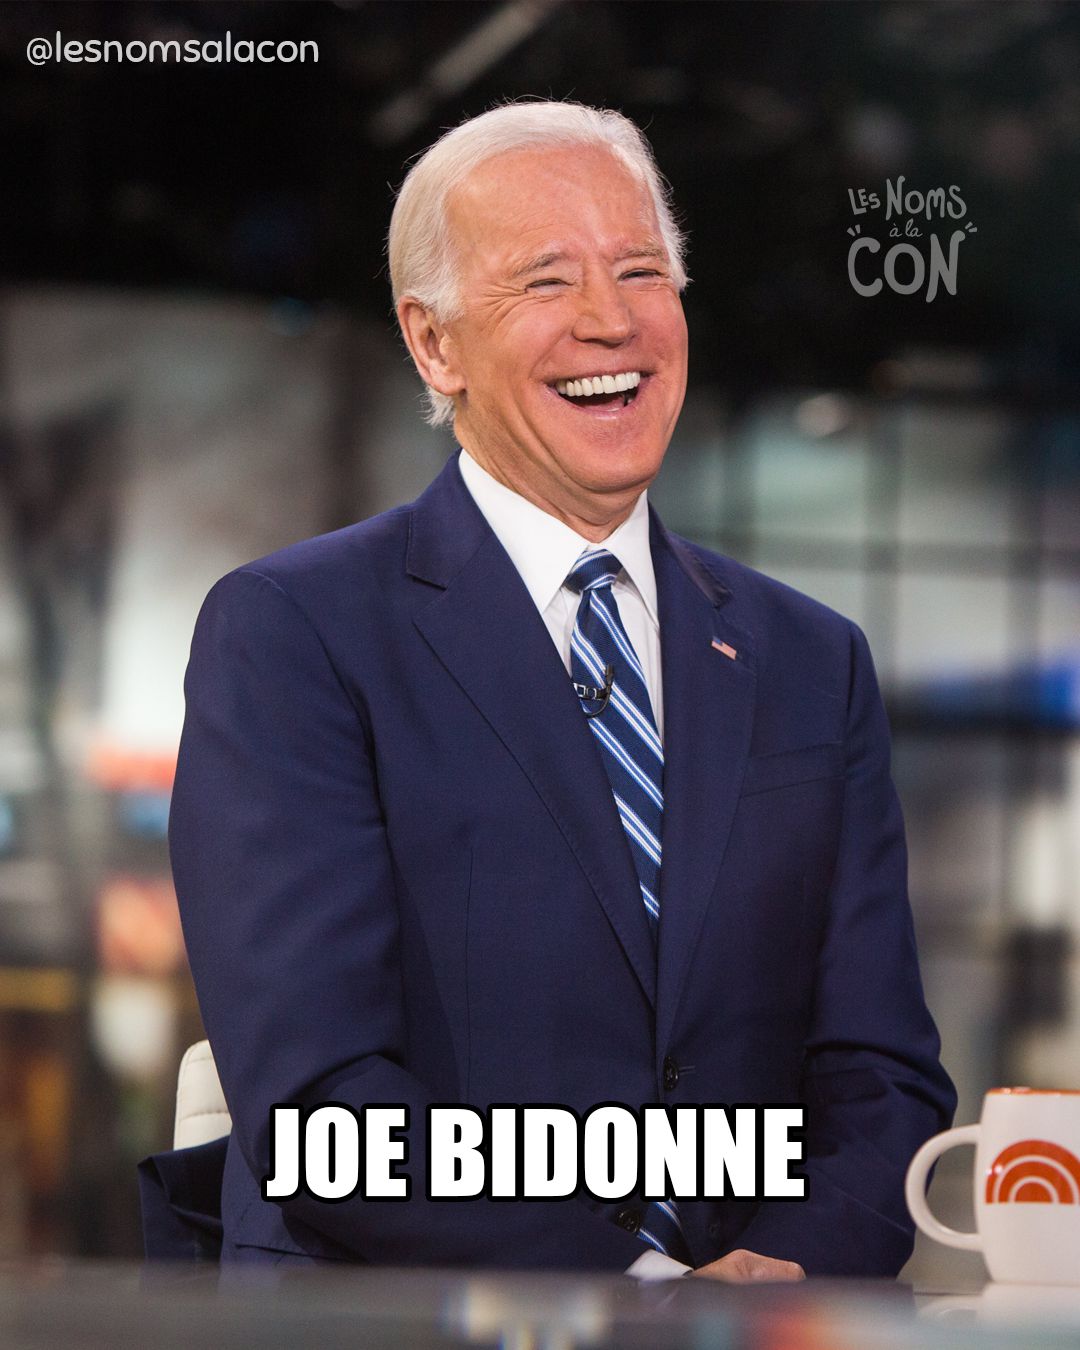 Joe Bidonne